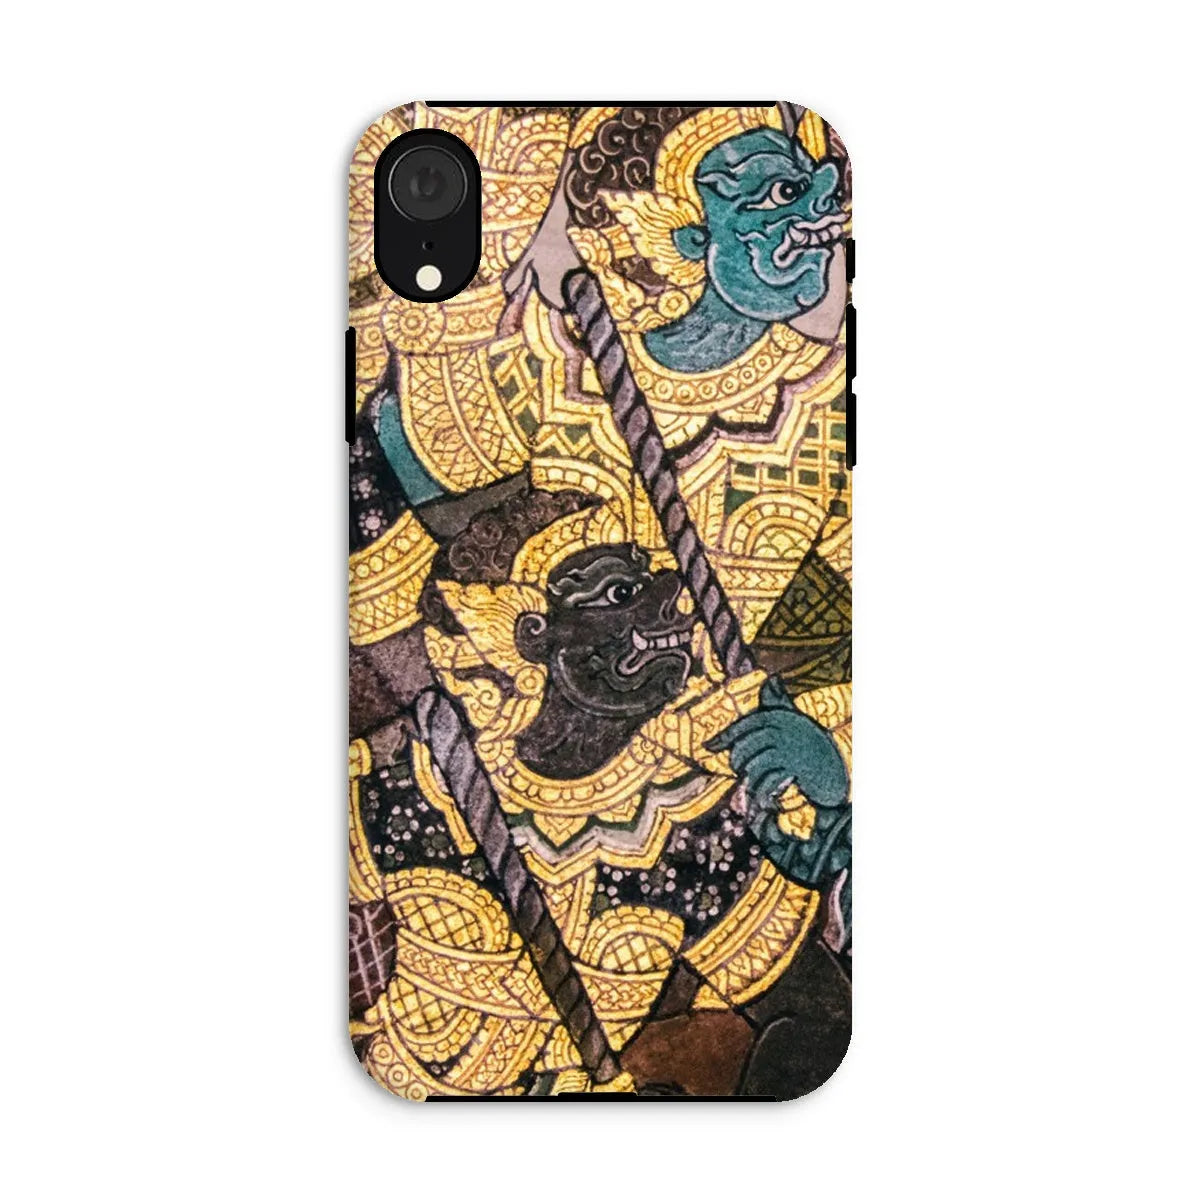 Action Men - Ancient Thai Temple Art Phone Case - Iphone Xr / Matte - Mobile Phone Cases - Aesthetic Art